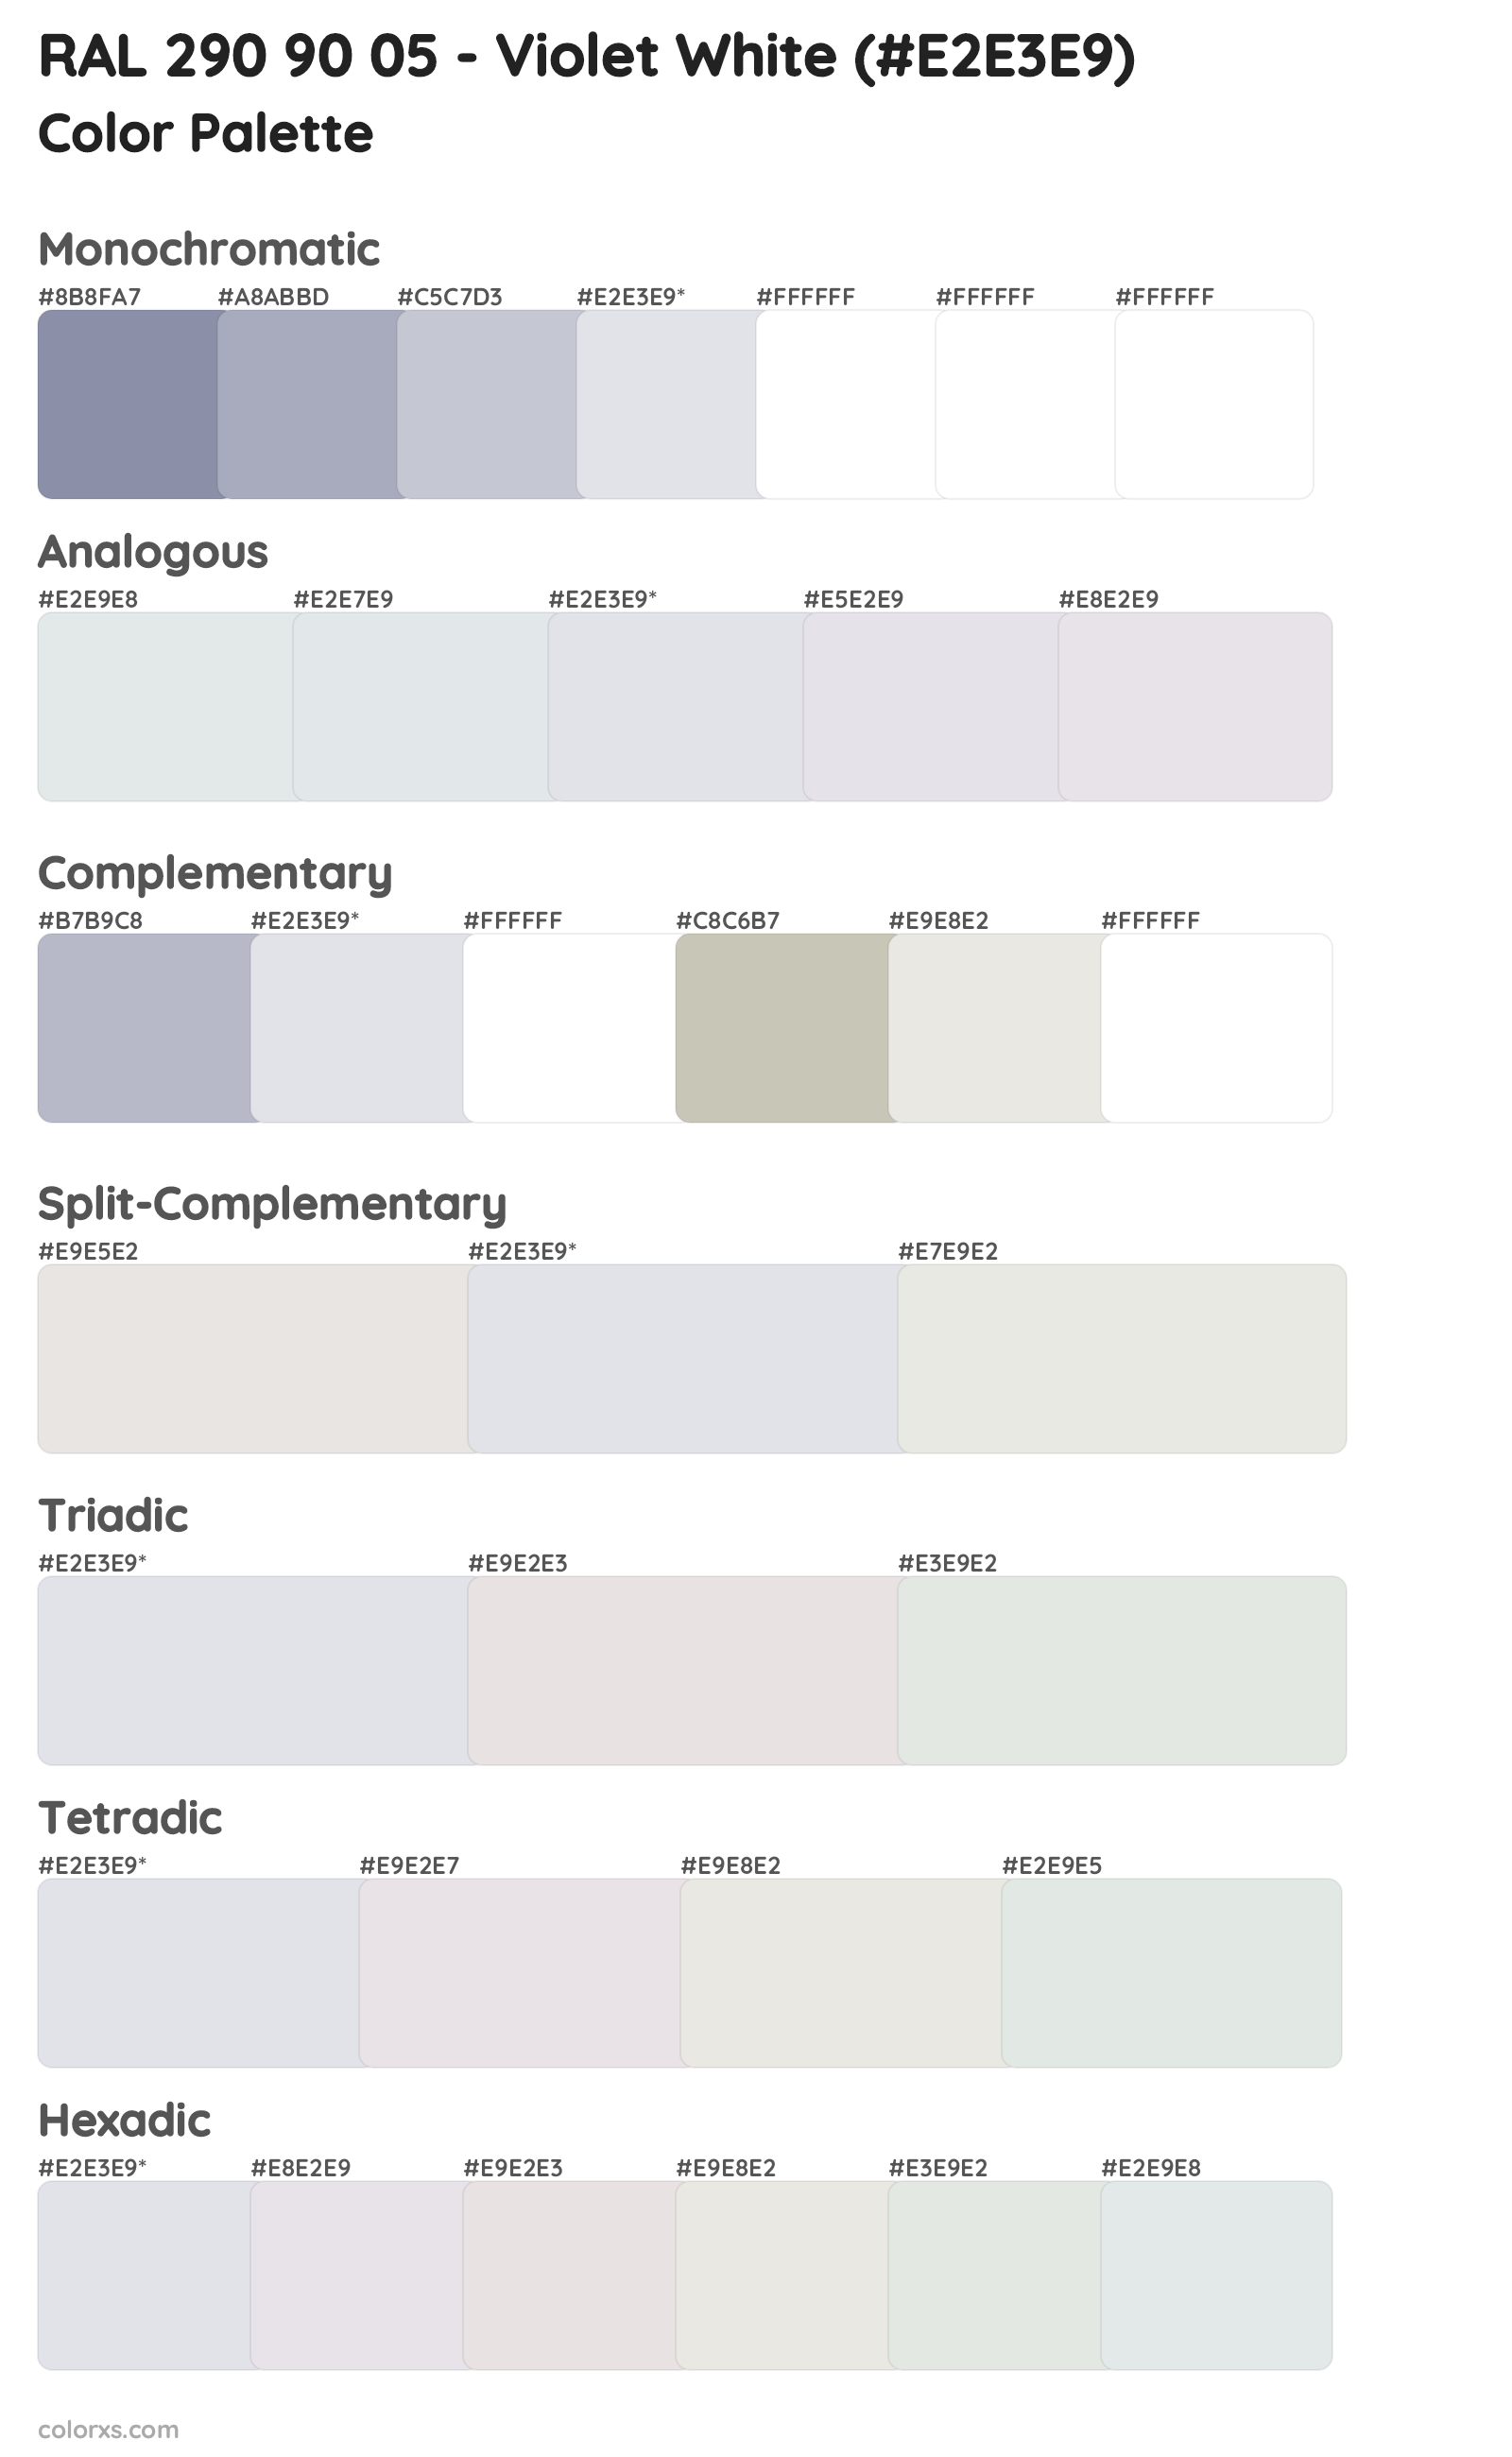 RAL 290 90 05 - Violet White Color Scheme Palettes